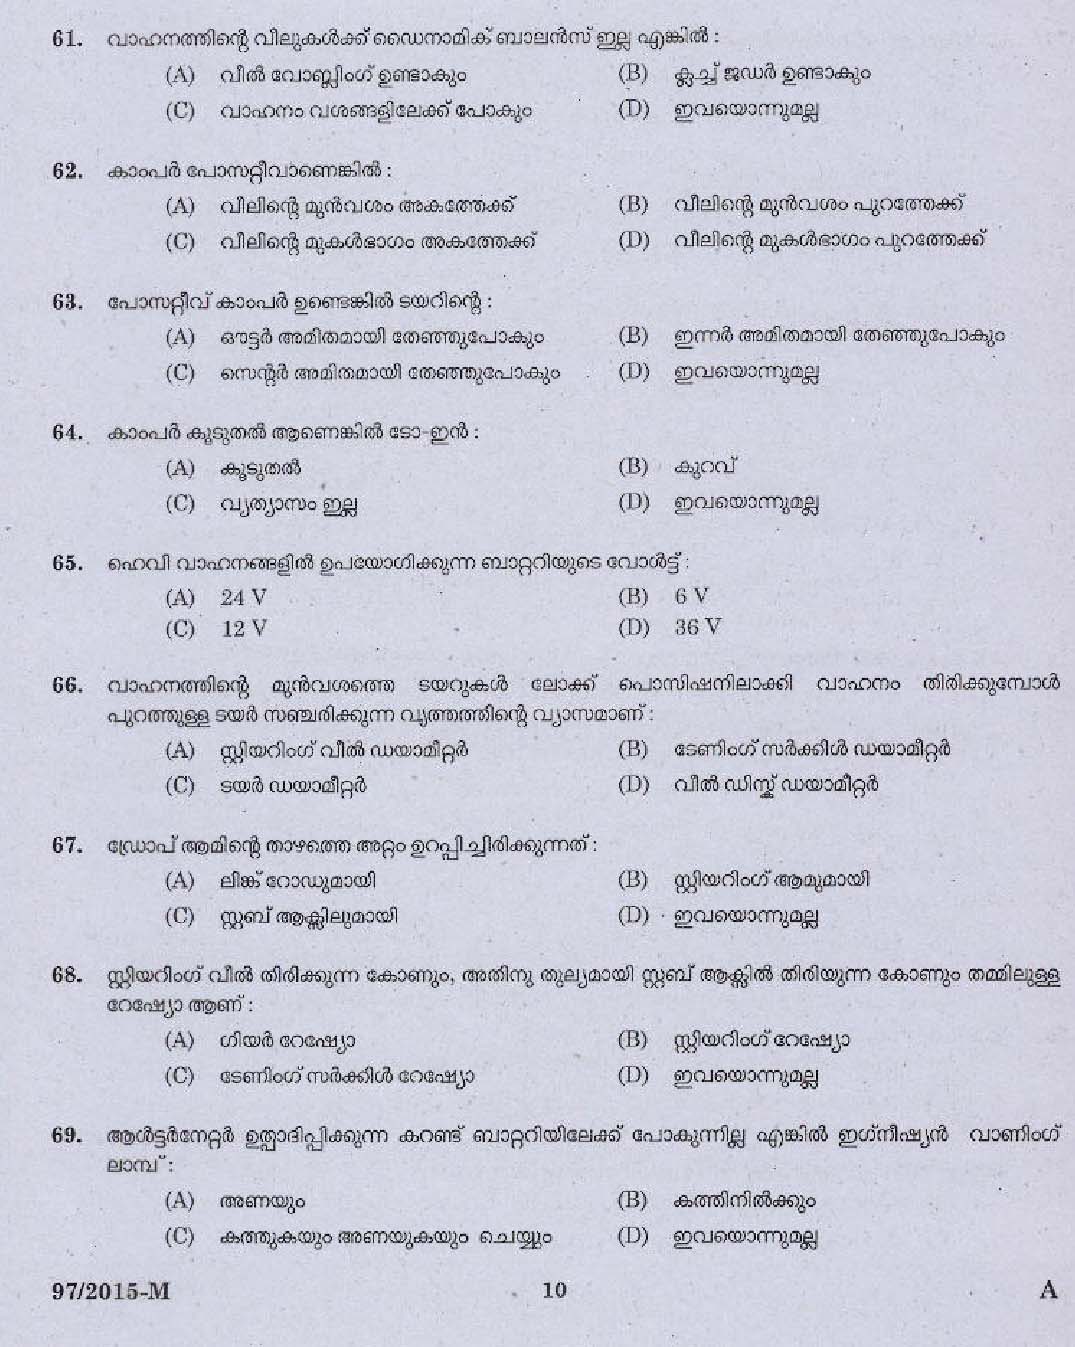 Kerala PSC Driver Grade II Exam 2015 Question Paper Code 972015 M 8